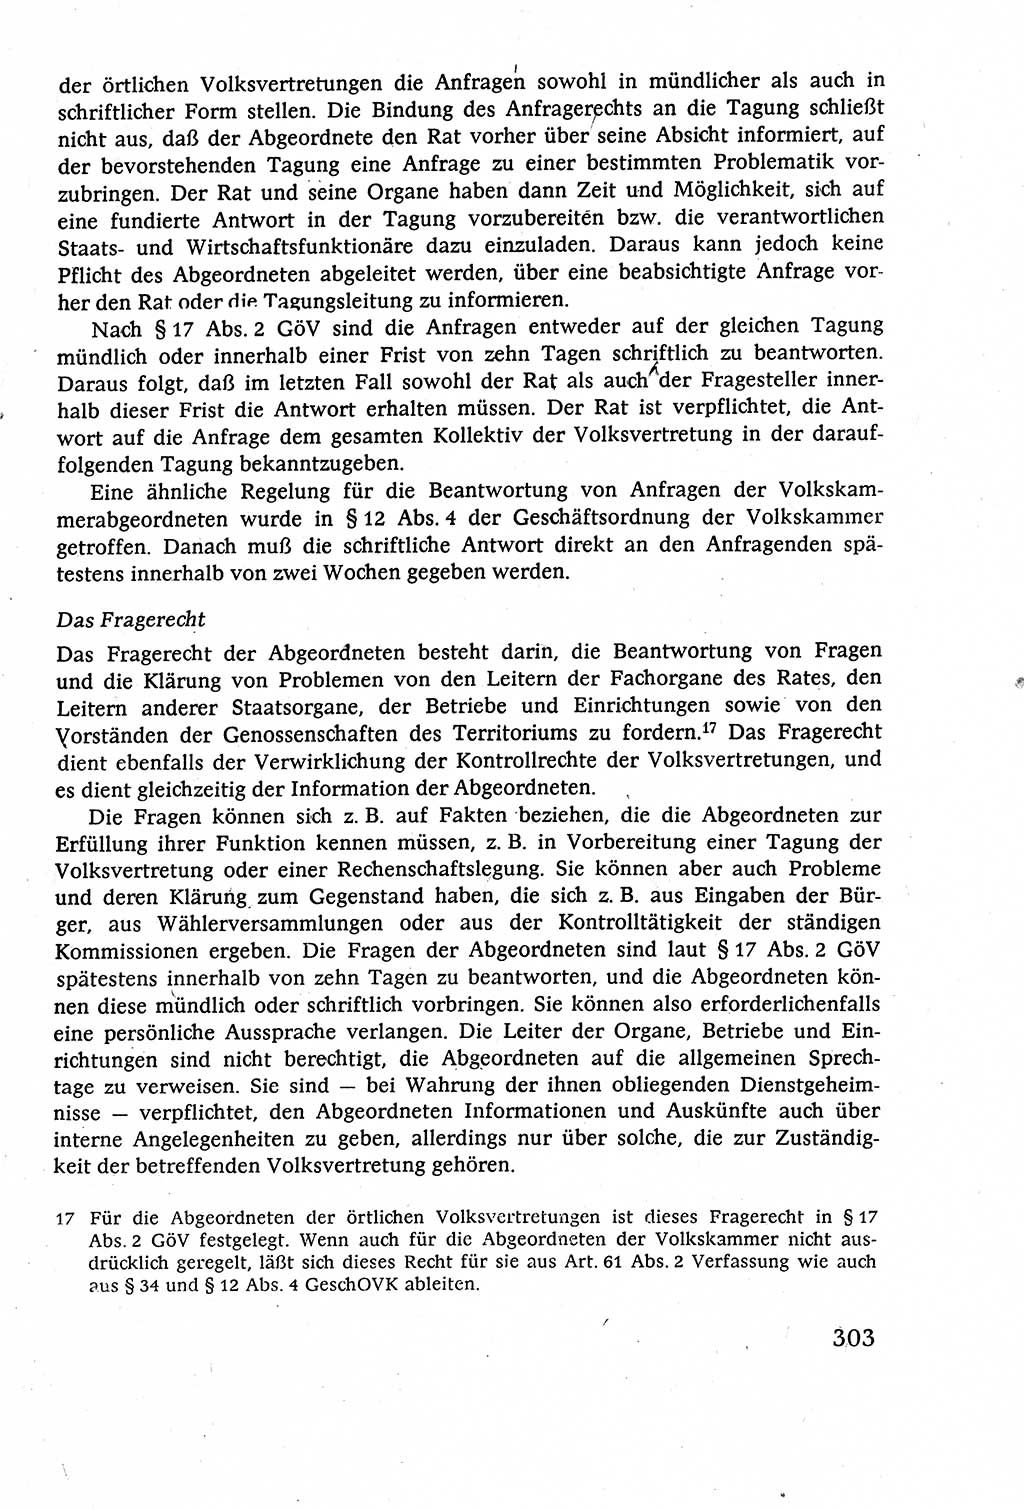 Staatsrecht der DDR (Deutsche Demokratische Republik), Lehrbuch 1977, Seite 303 (St.-R. DDR Lb. 1977, S. 303)